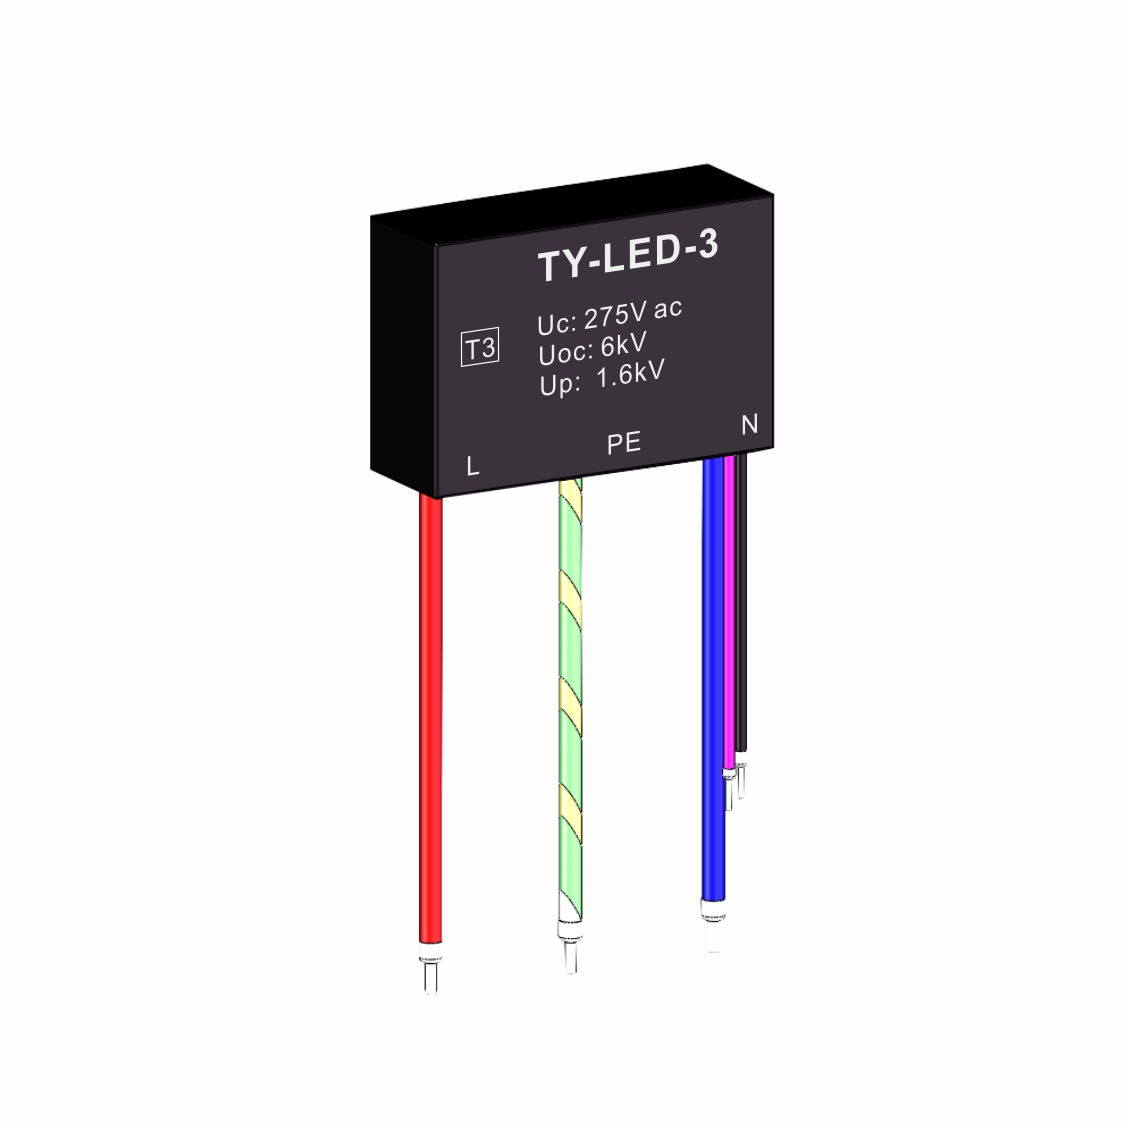 TY-LED-3